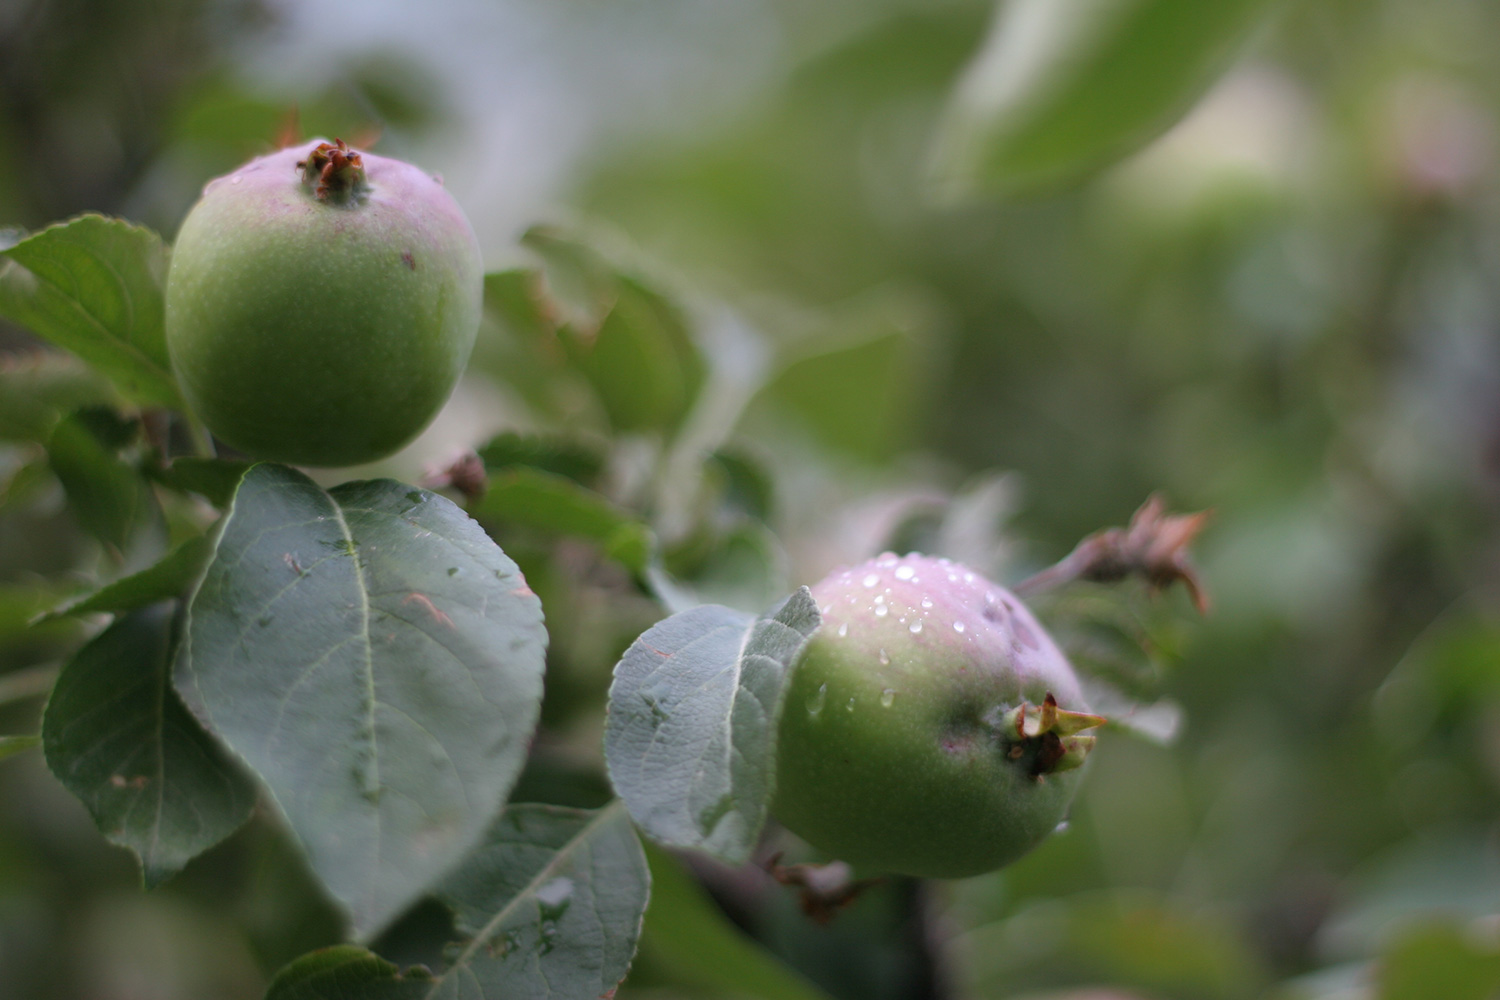 Unripe apples on a tree